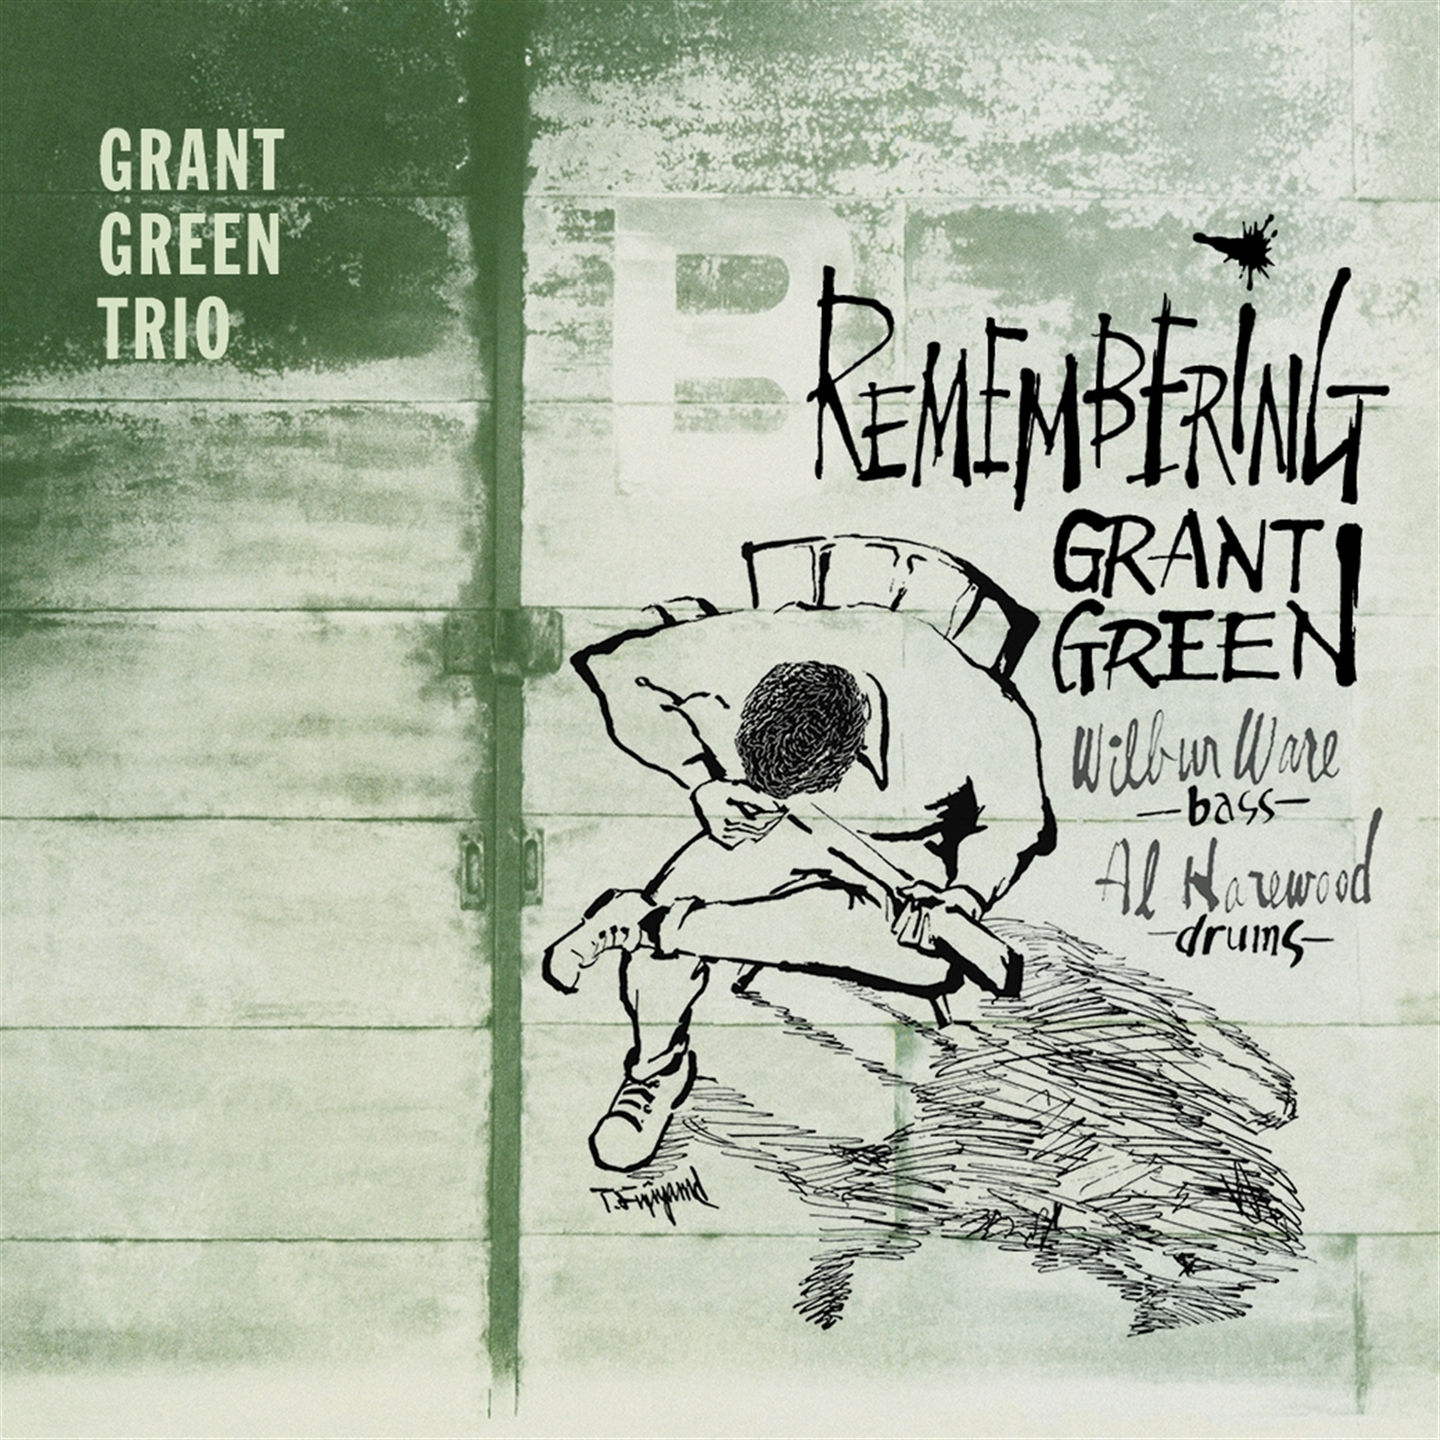 REMEMBERING GRANT GREEN